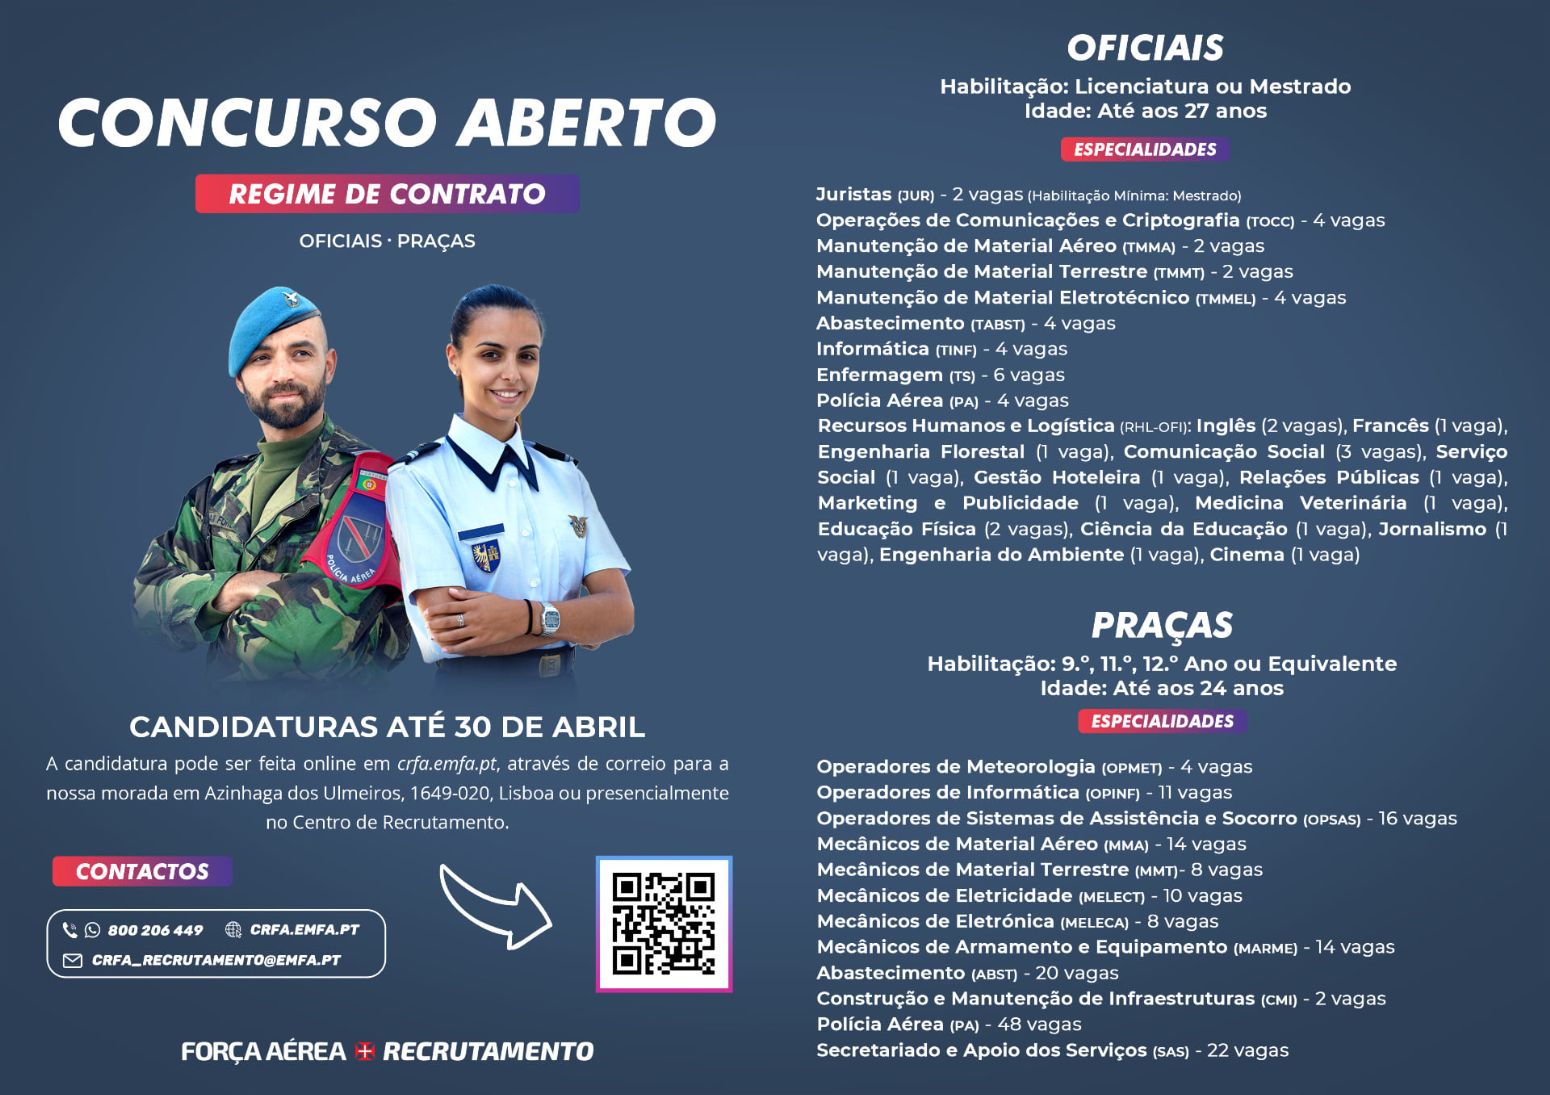 Força Aérea: Candidaturas abertas até 30 de Abril